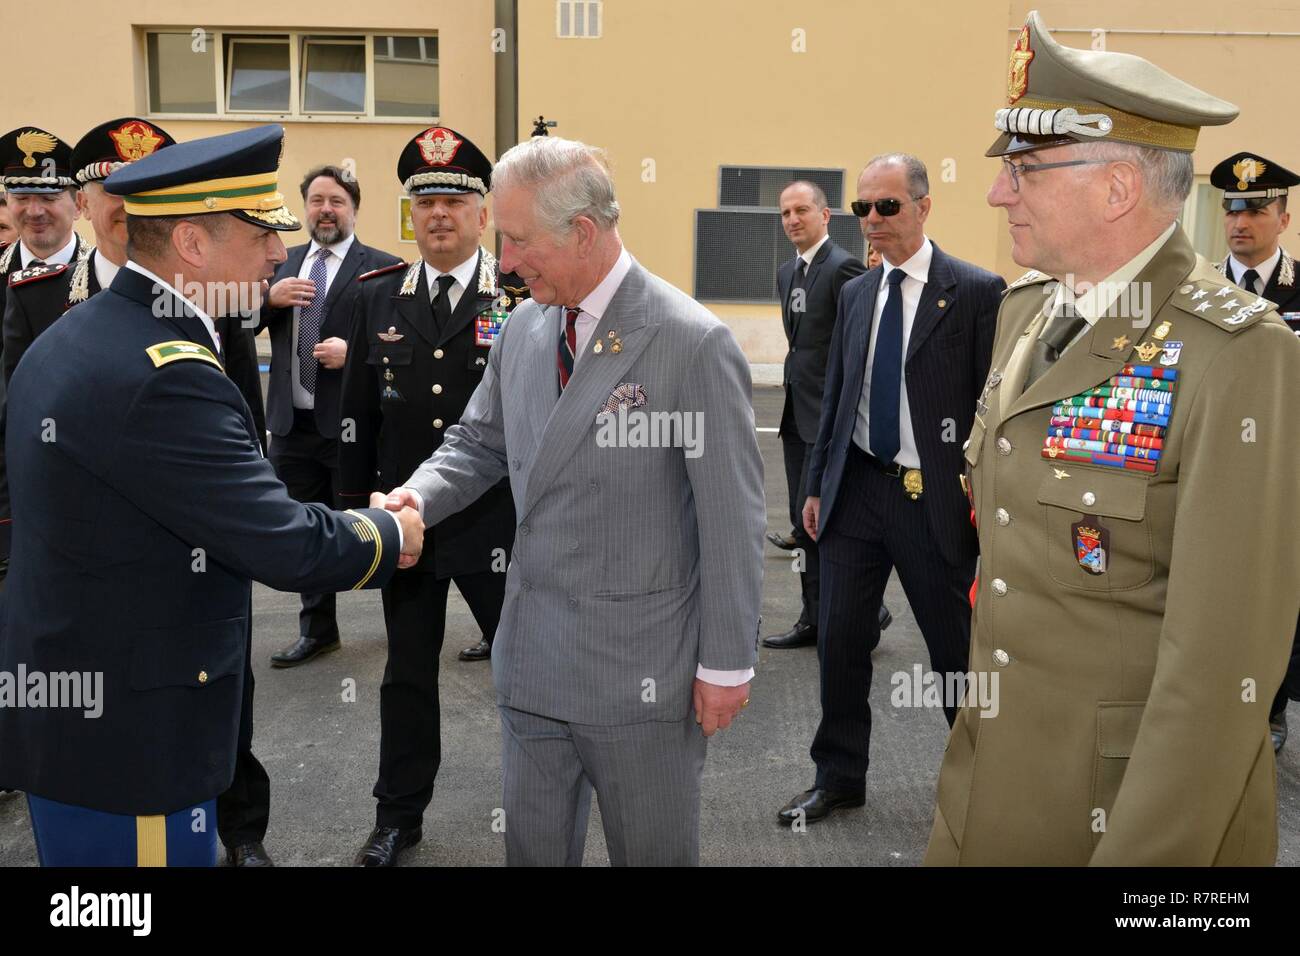 Su Alteza Real, el Príncipe Carlos, Príncipe de Gales, cumple el Coronel del Ejército estadounidense CoESPU Darío S. Gallegos, director adjunto (a la izquierda) durante la visita al centro de excelencia para unidades de policía de estabilidad (CoESPU) de Vicenza, Italia, 1 de abril de 2017. Foto de stock